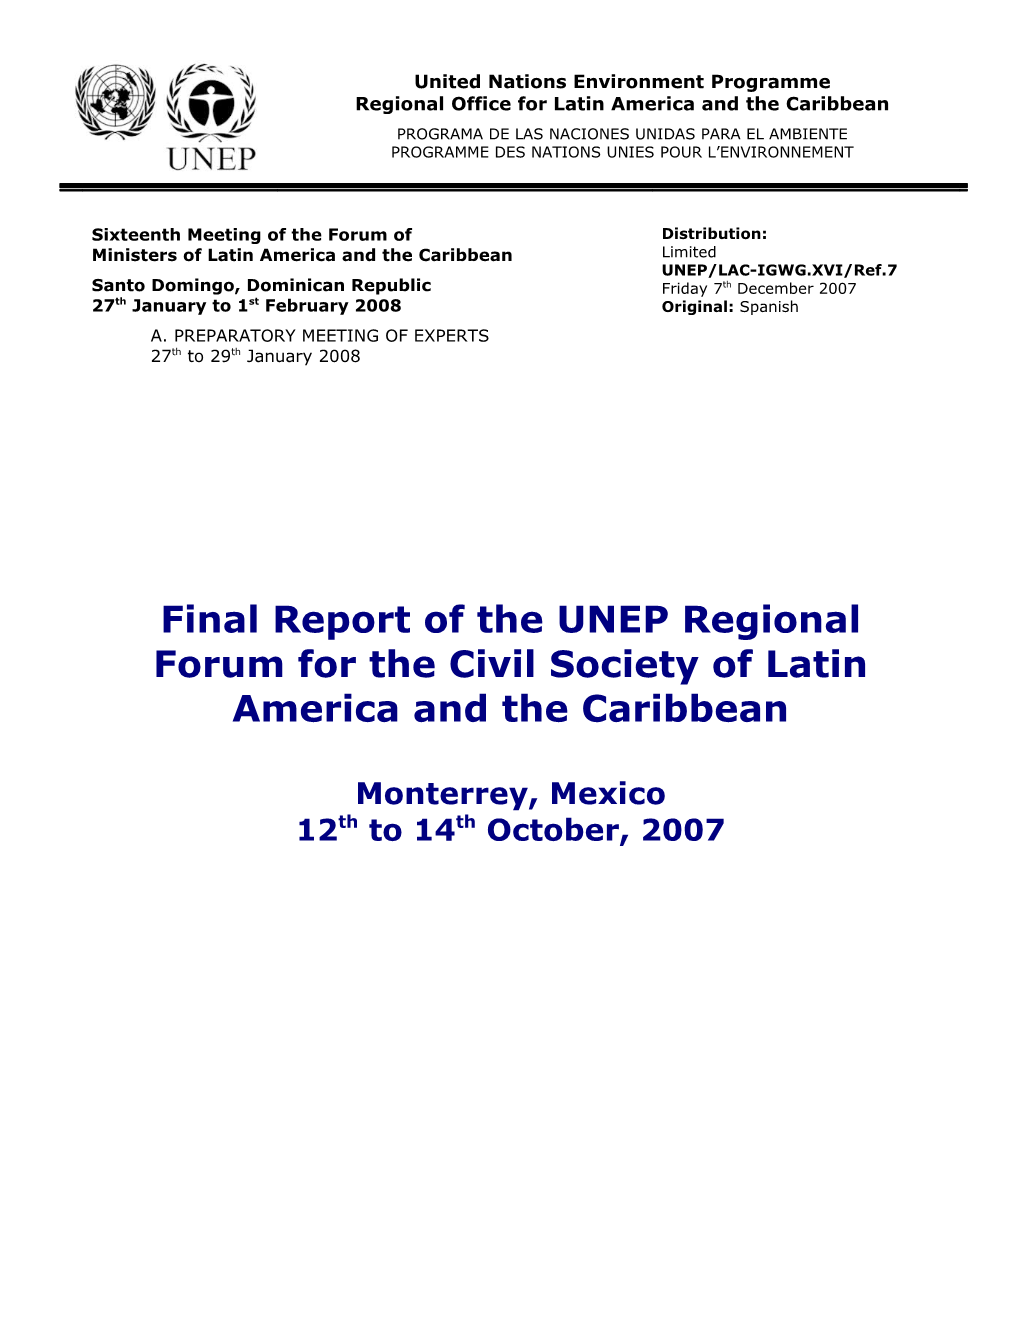 Informe Final Del Foro Regional